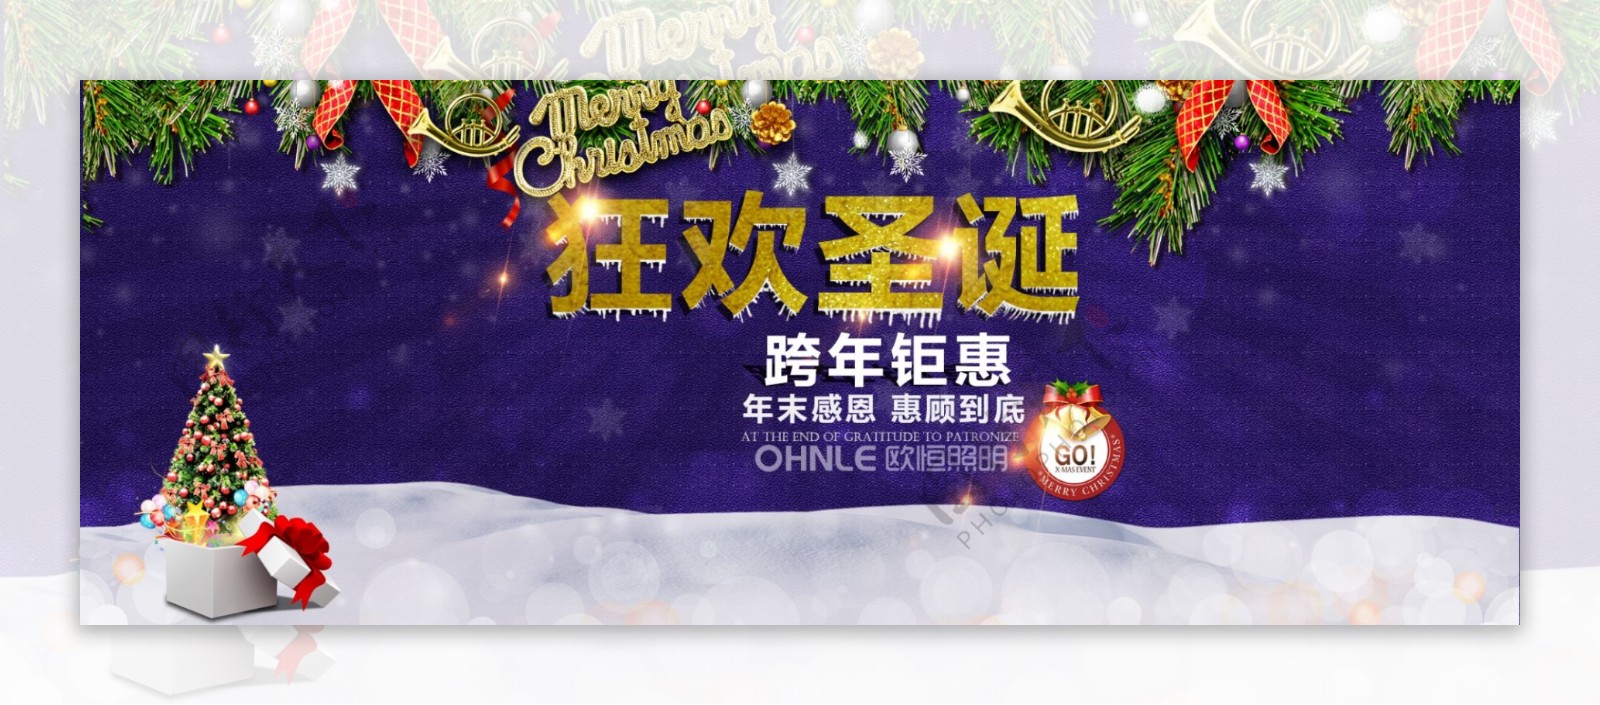 淘宝2015圣诞节活动专题页面海报